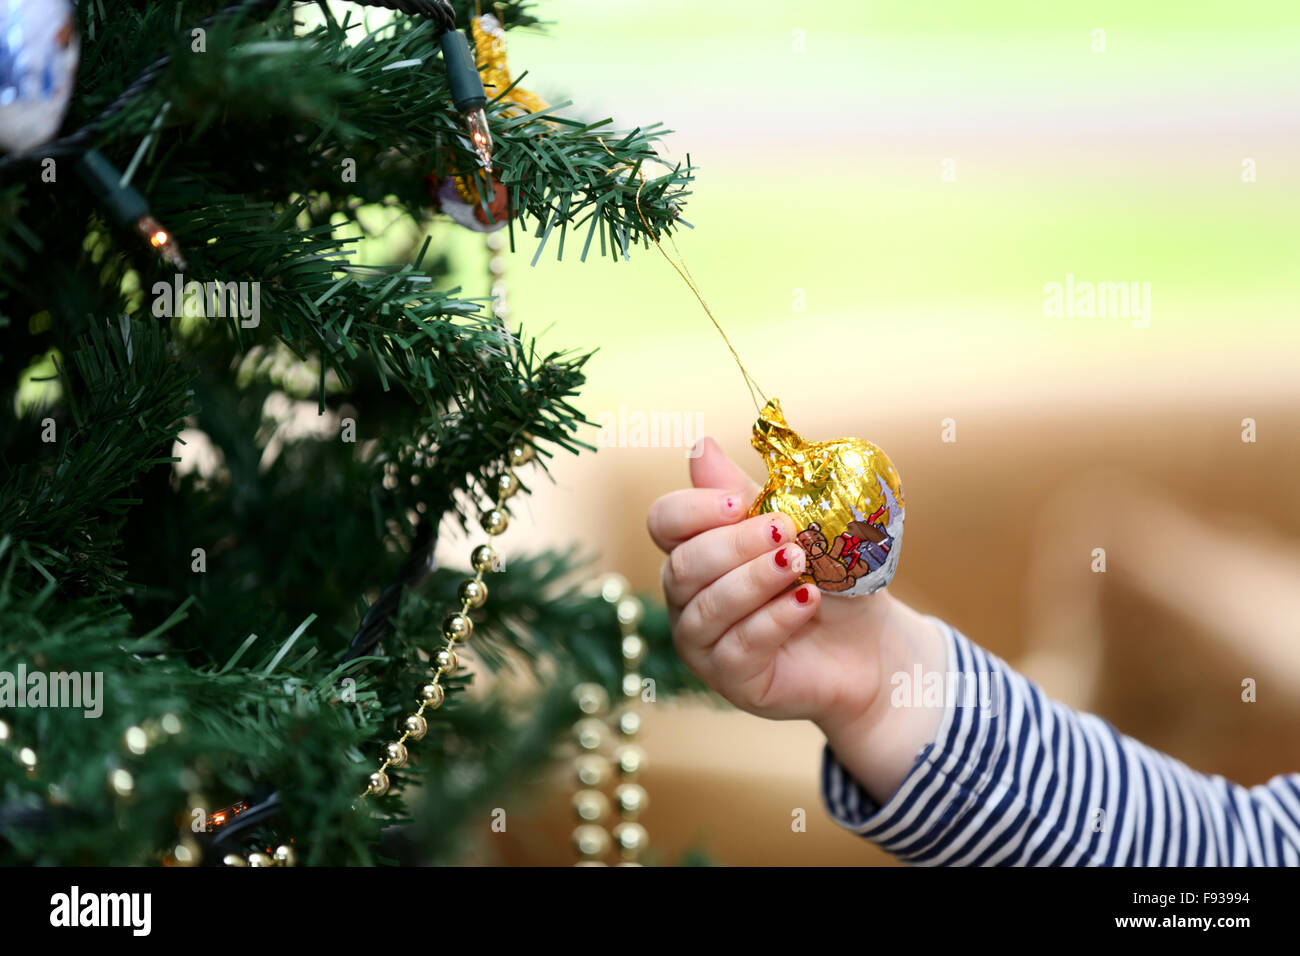 Un enfant tirant un chocolat décoration d'arbre de Noël à partir d'un arbre de Noël decortaed Banque D'Images